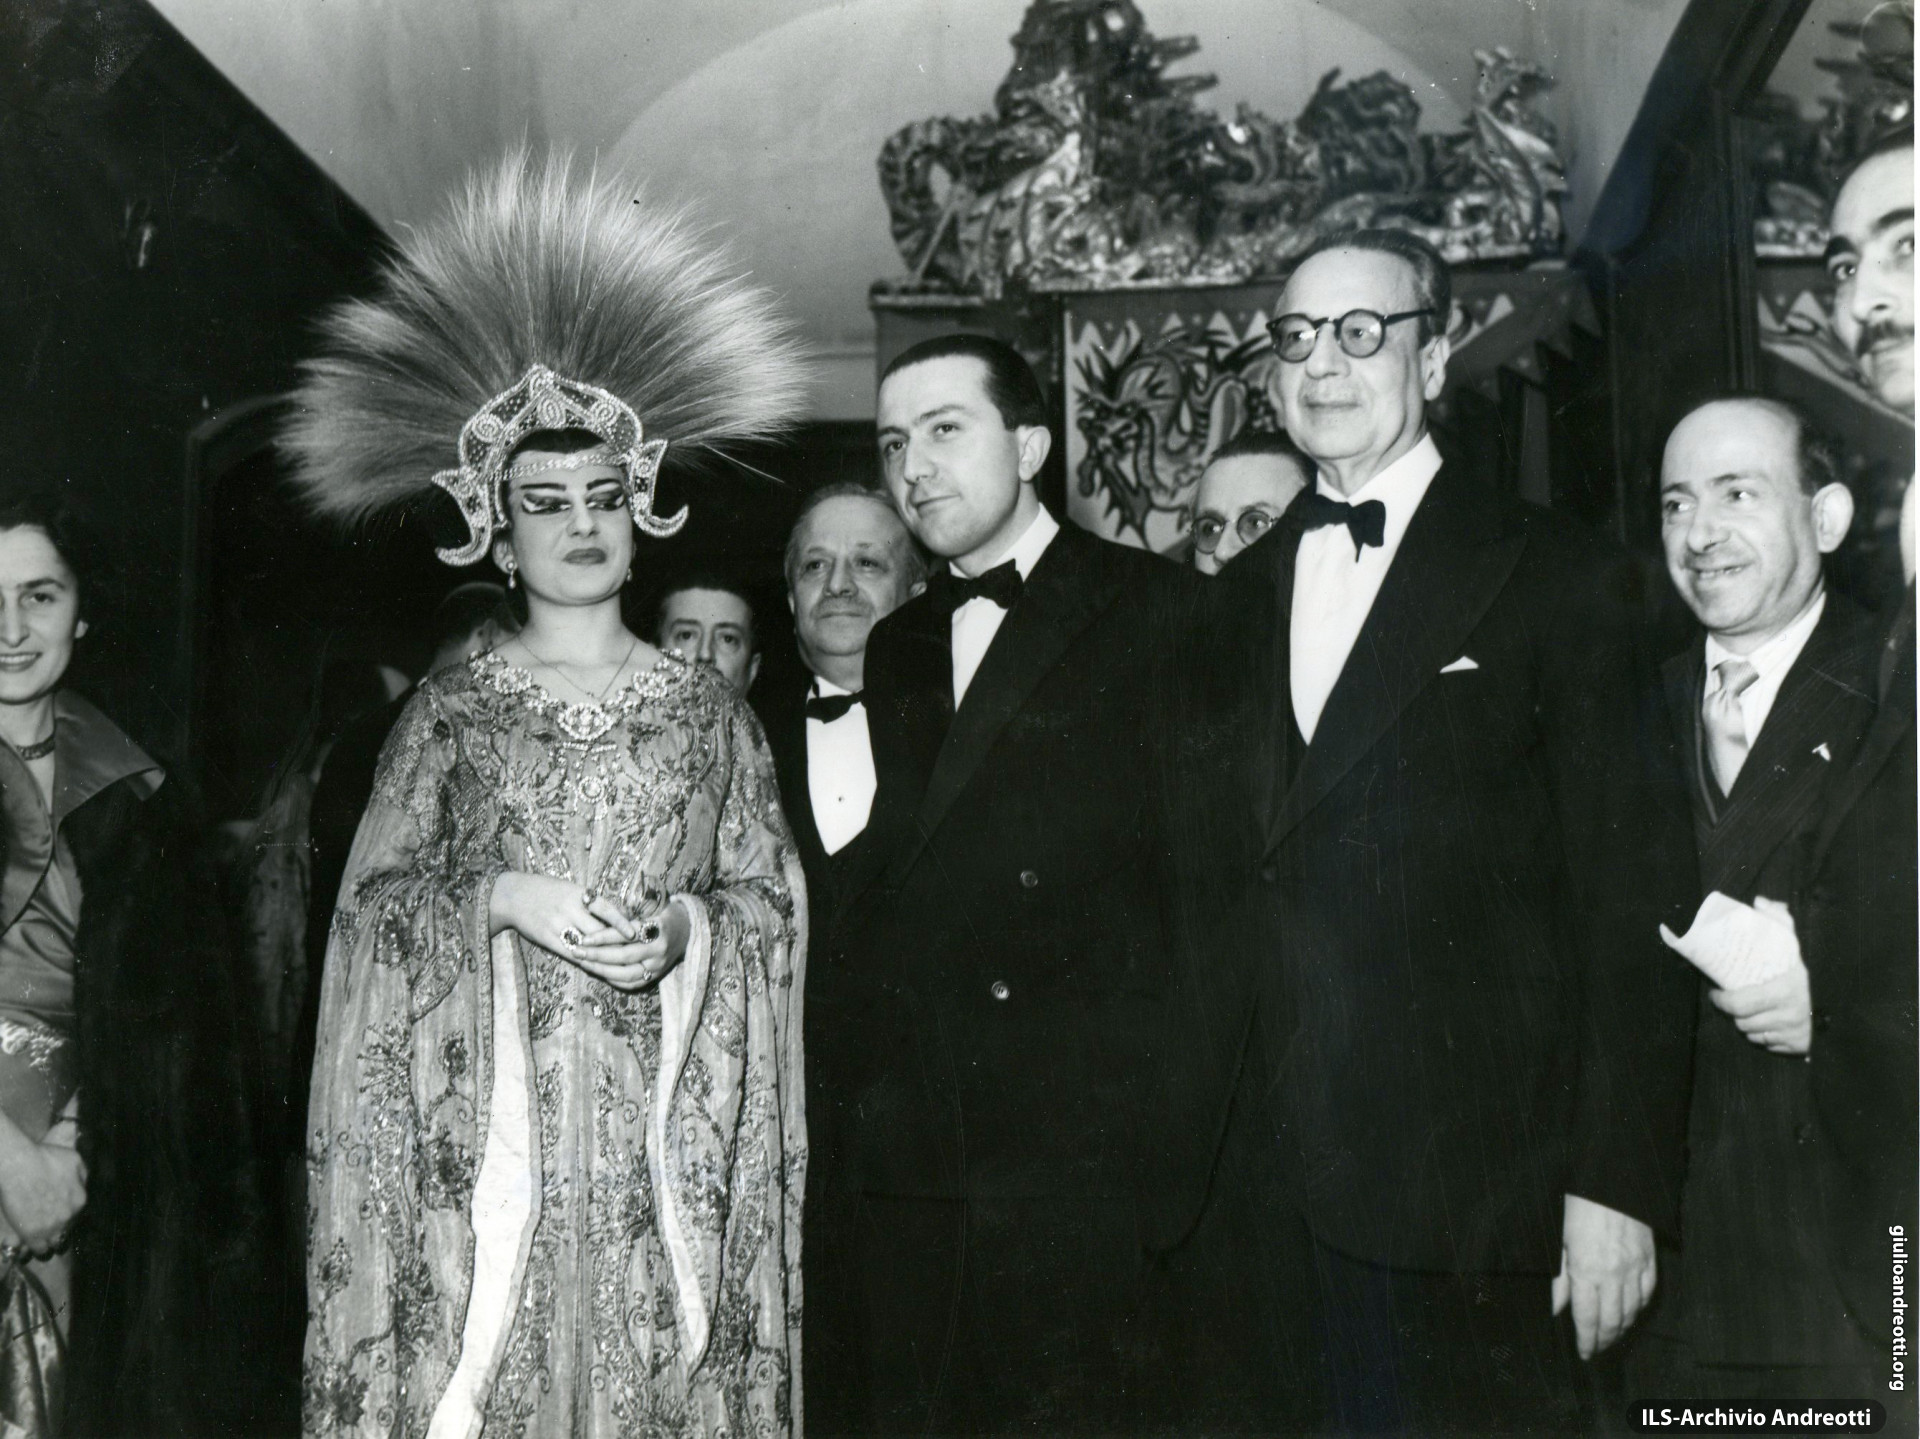 Napoli, Teatro San Carlo. Rappresentazione della Turandot con Maria Callas. Era il 16 dicembre 1949.